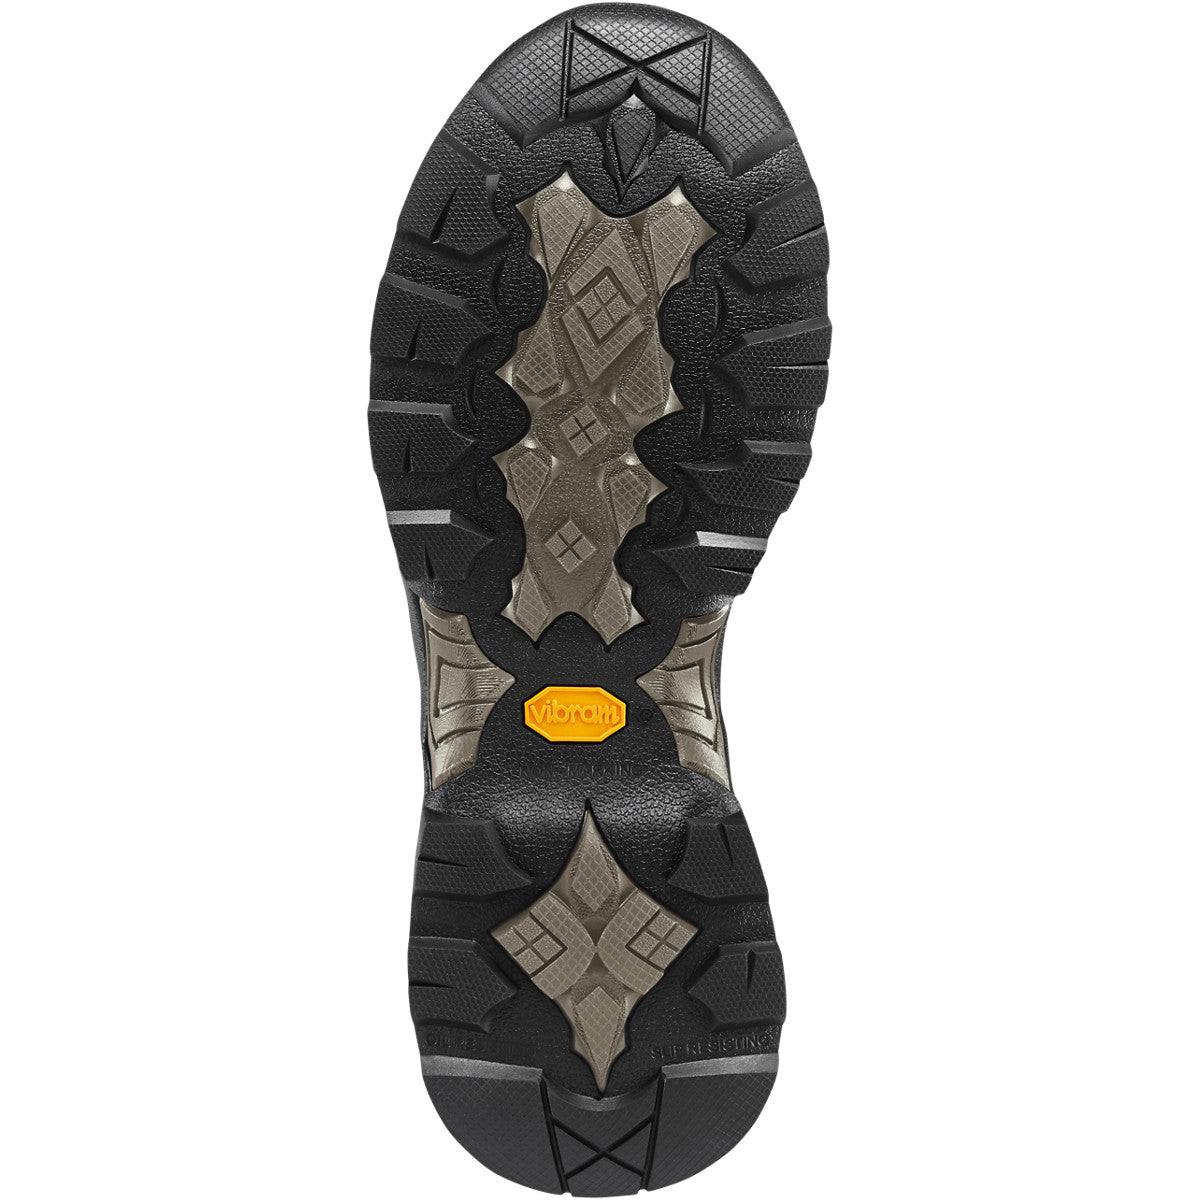 Danner Men's Crucial 6" Composite Toe WP Work Boot - Brown - 15861  - Overlook Boots